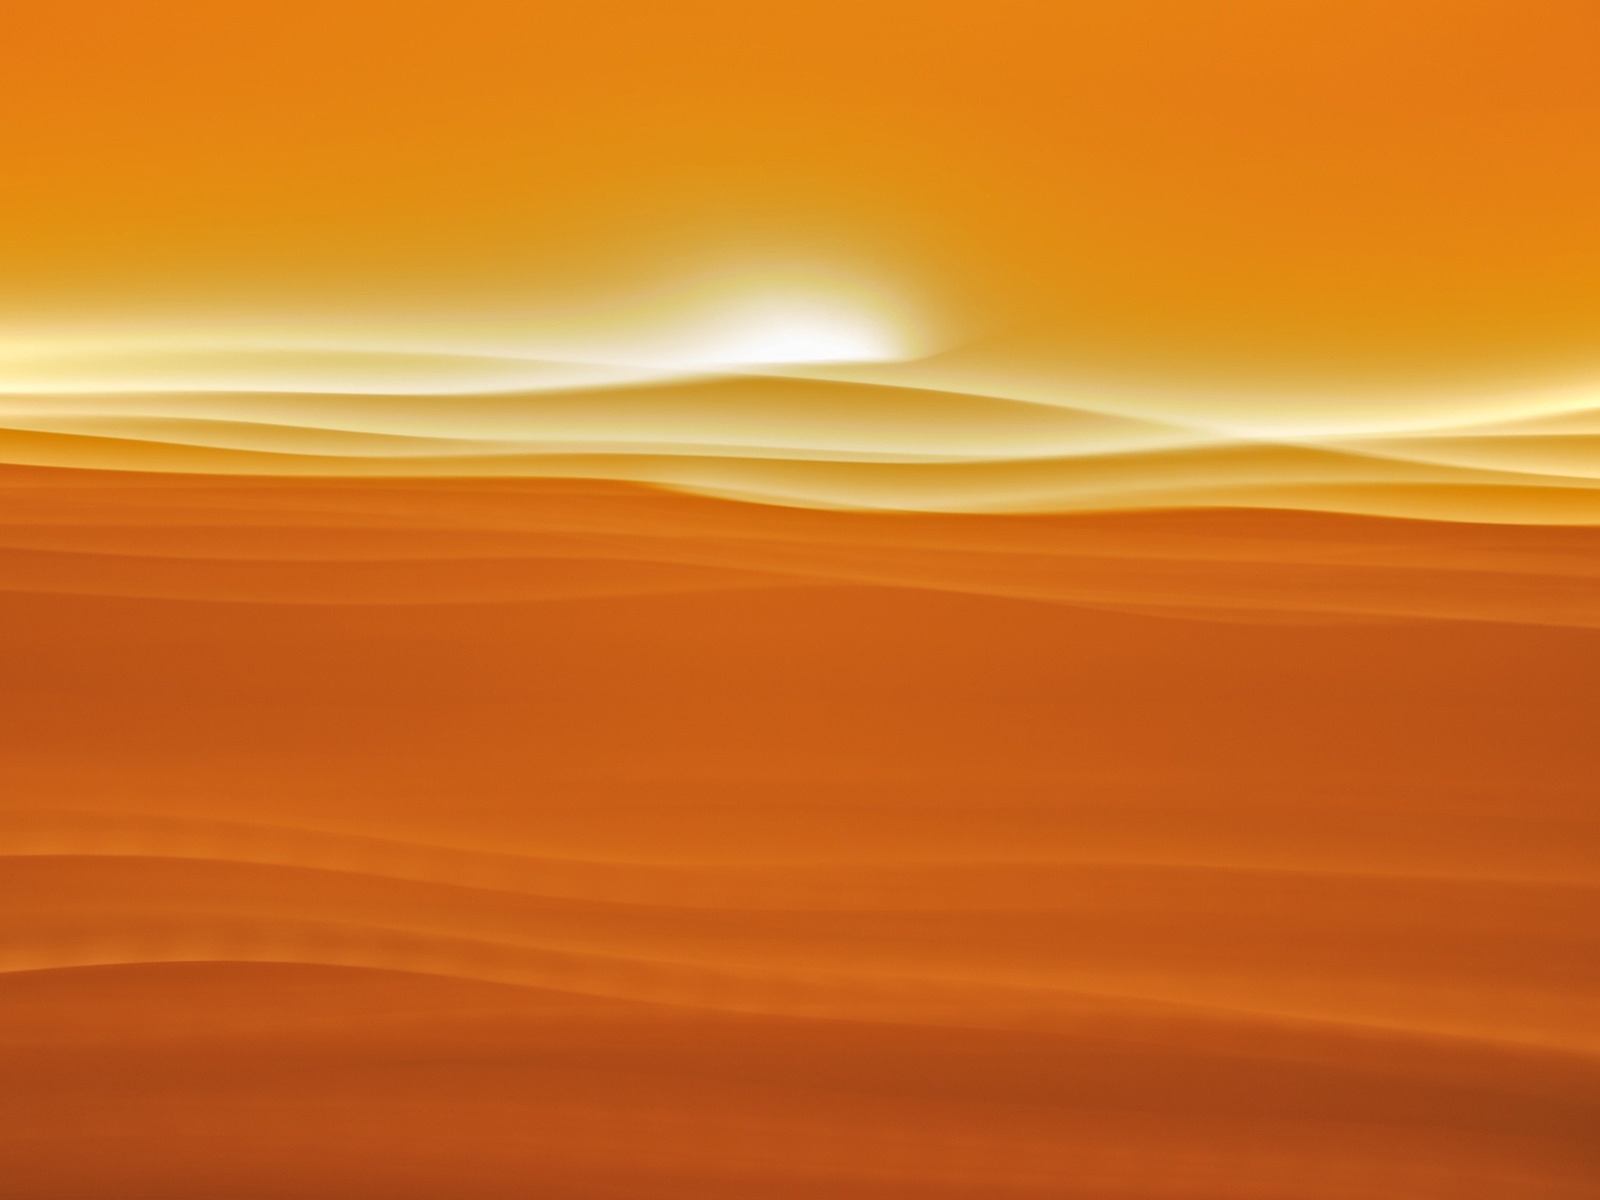 Desert sunlight for 1600 x 1200 resolution